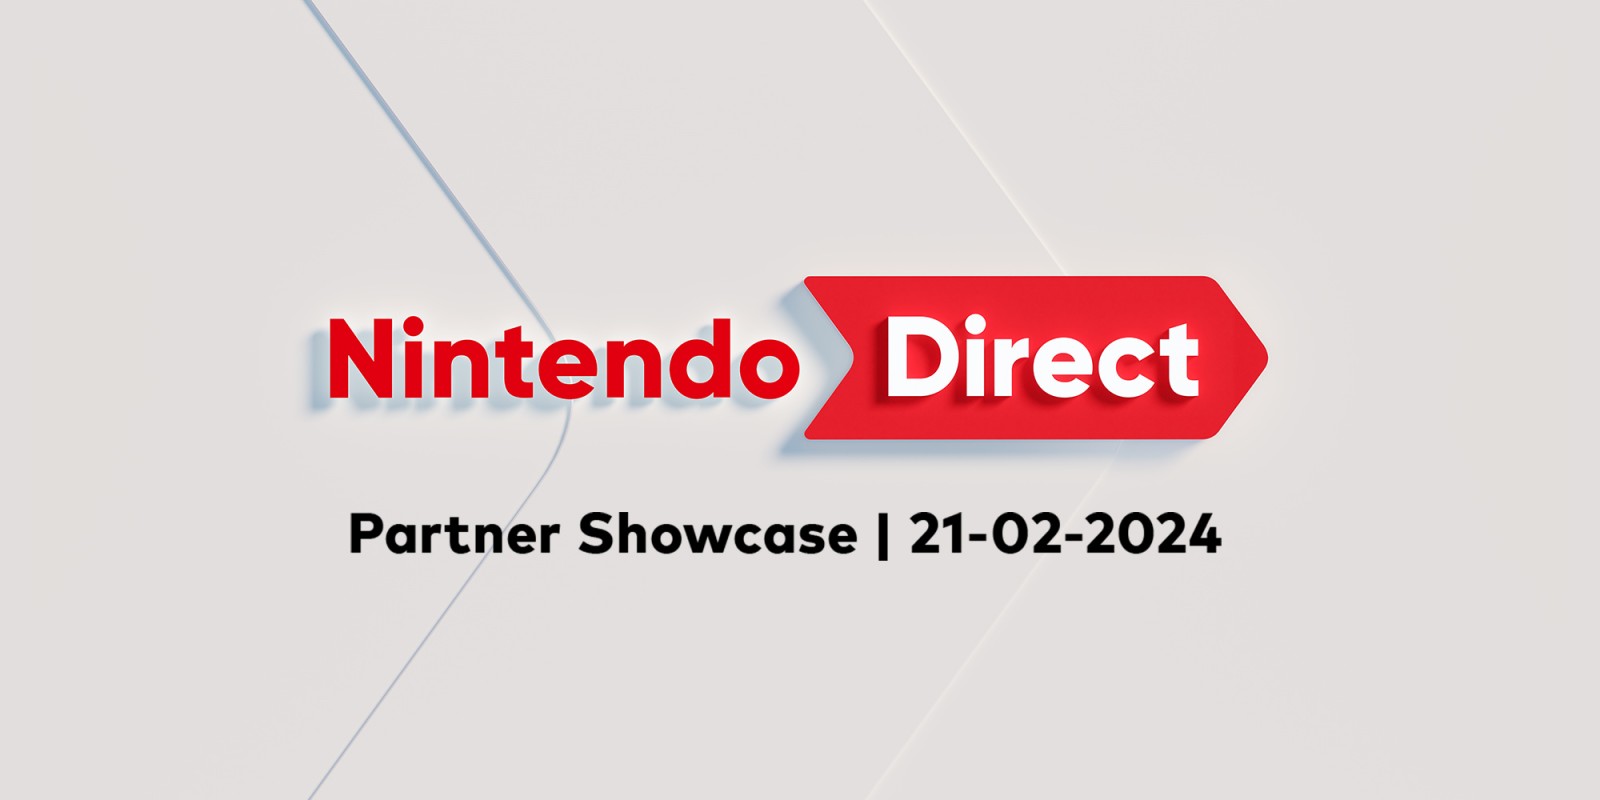 Aquí tienen una recopilación de todos los juegos, tráileres y anuncios del Nintendo Direct emitido el 21 de febrero de 2024.